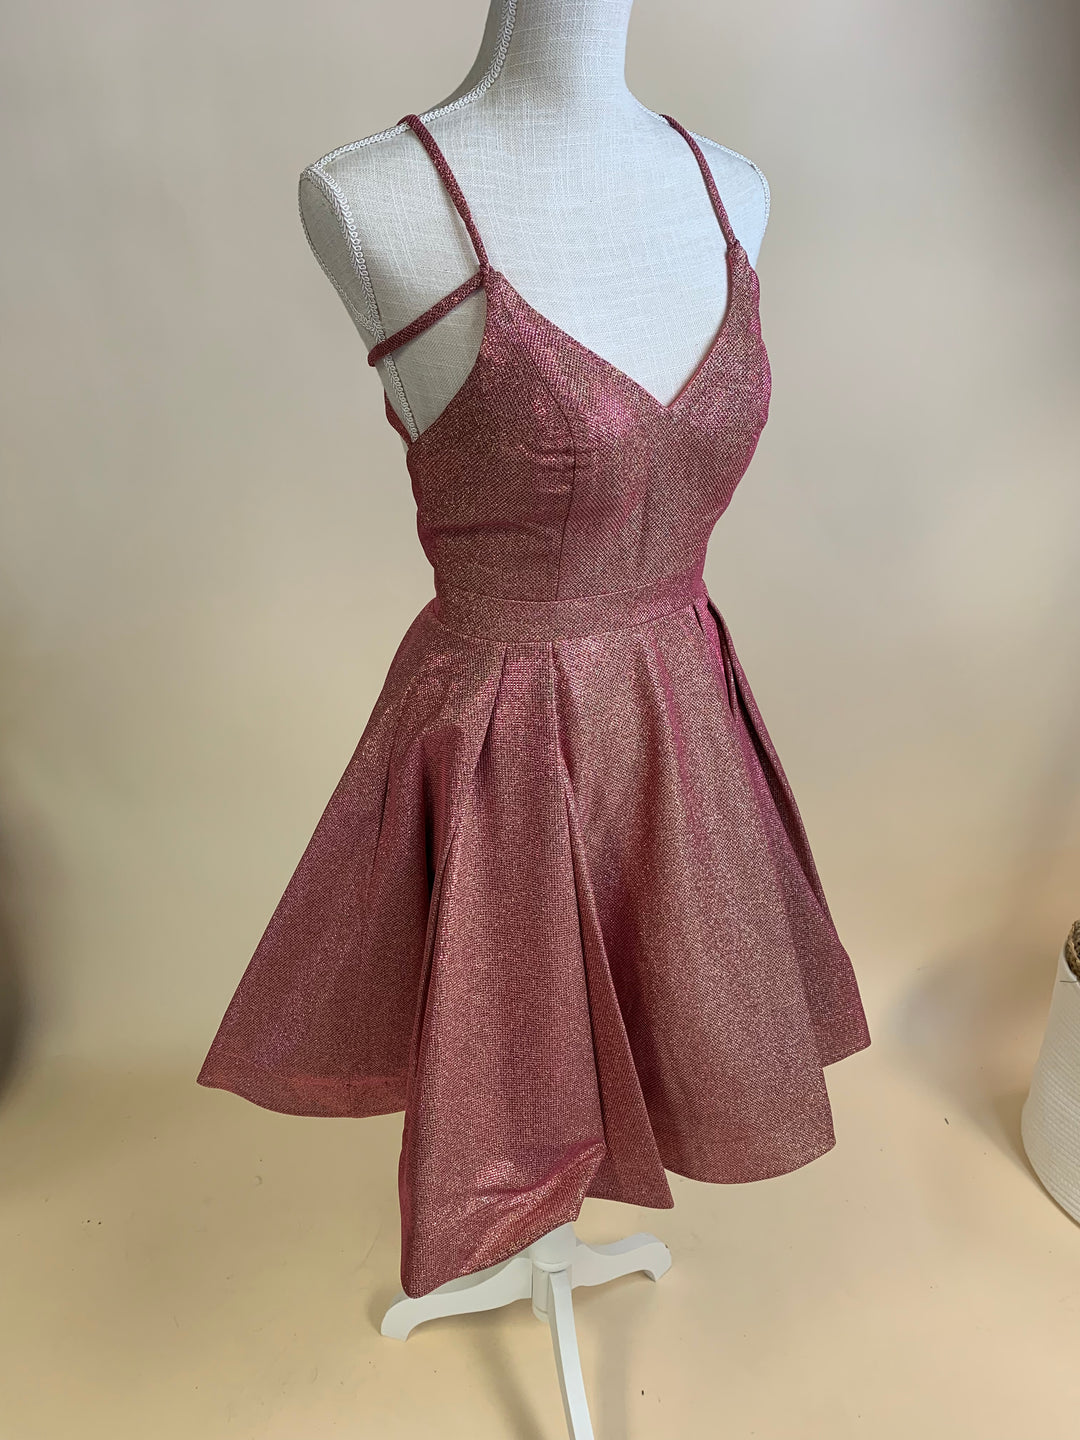 Dusty Rose Strap Back Dress (Size 6)